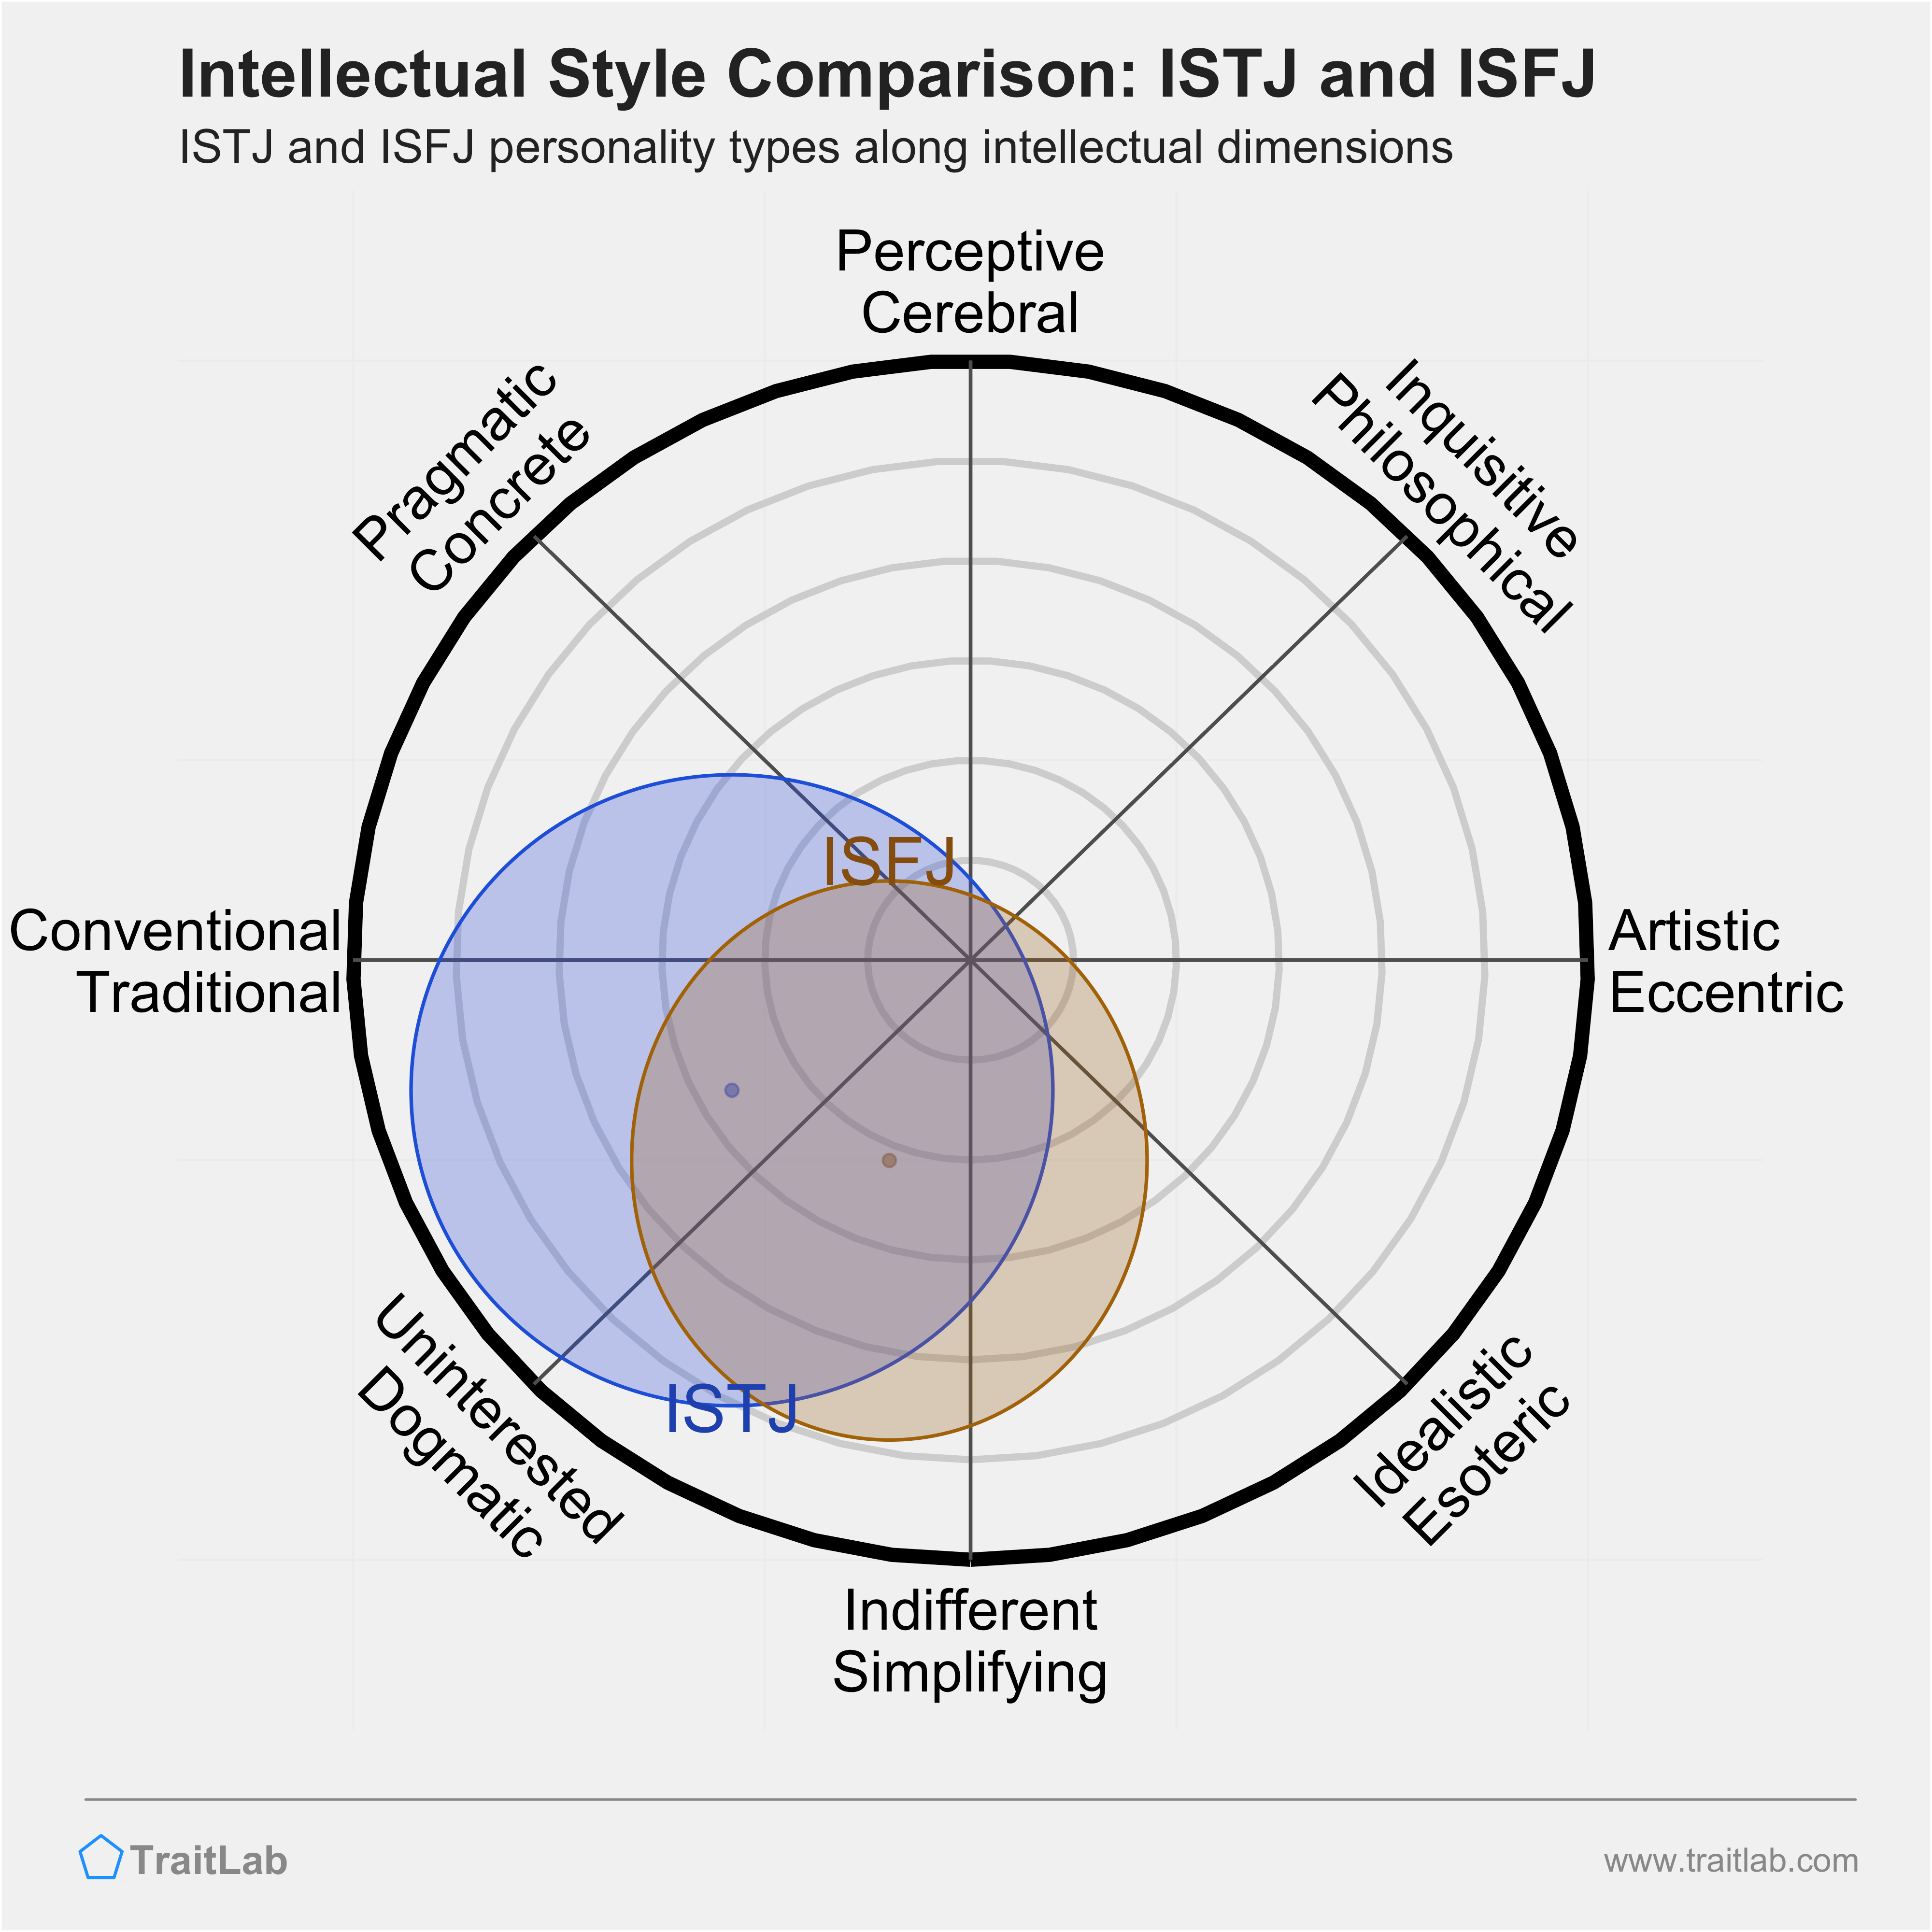 ISTJ and ISFJ comparison across intellectual dimensions